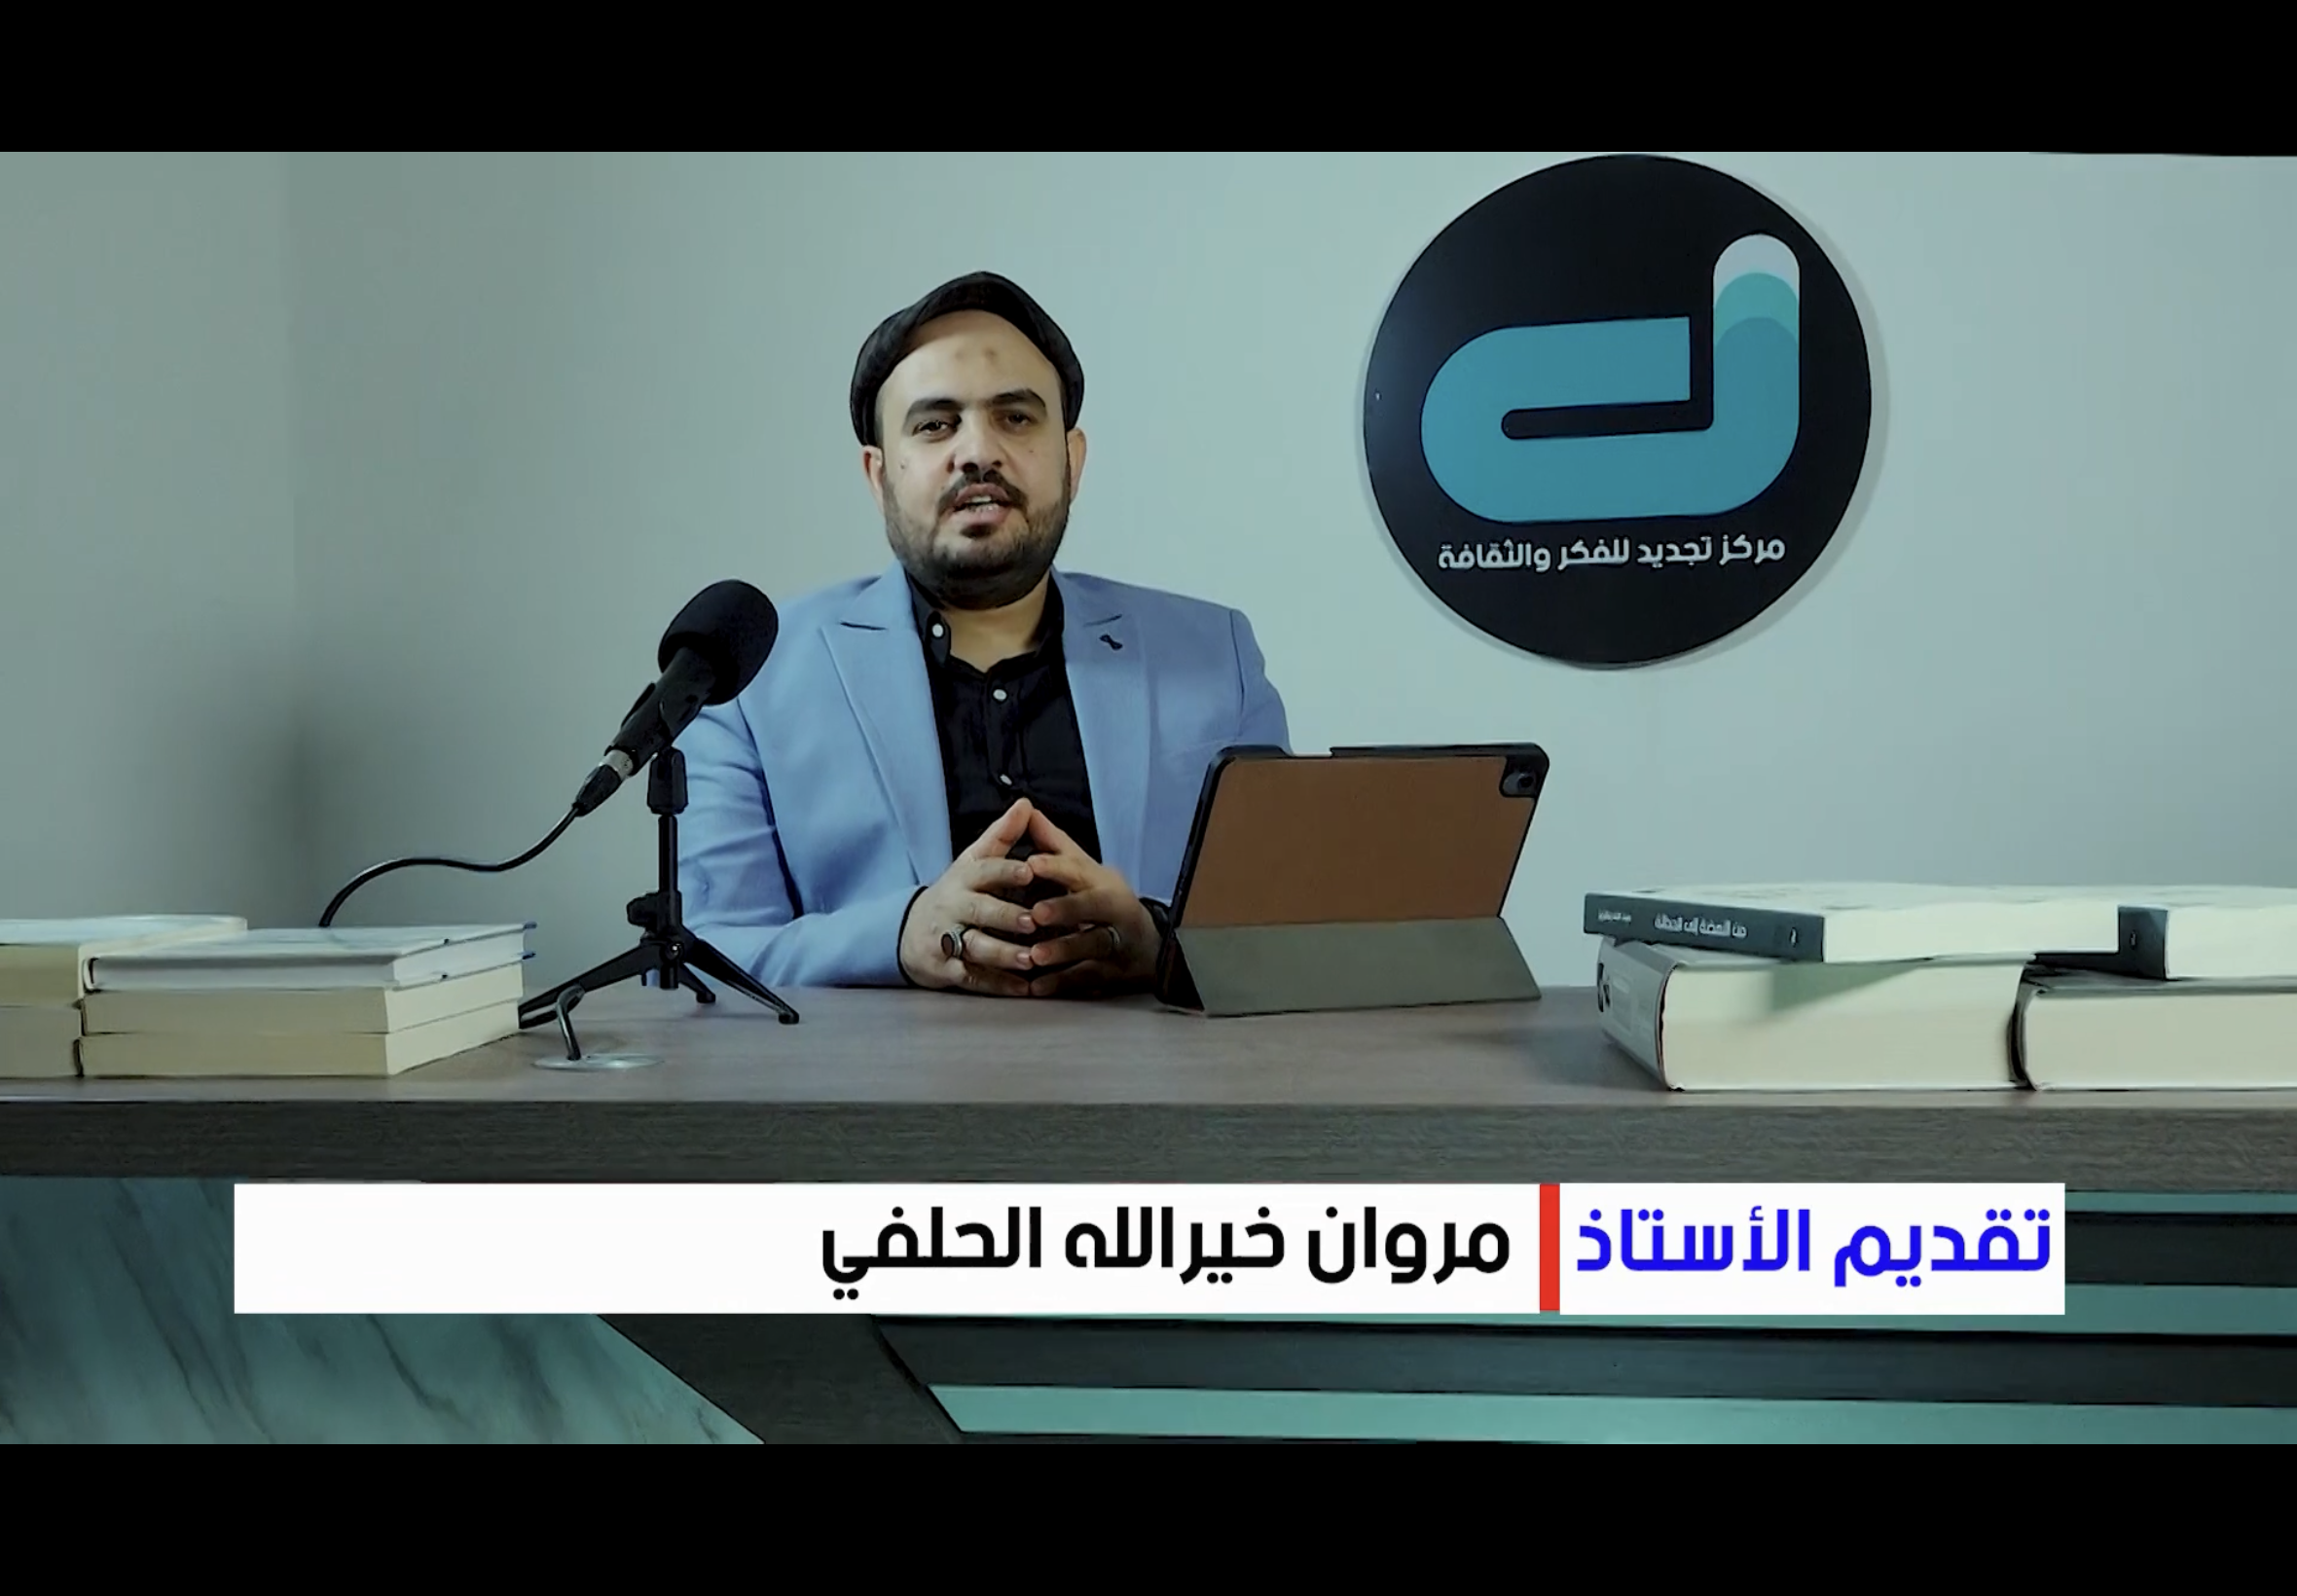 برنامج الحداثة وما بعد الحداثة/ الاستاذ مروان خيرالله الحلفي